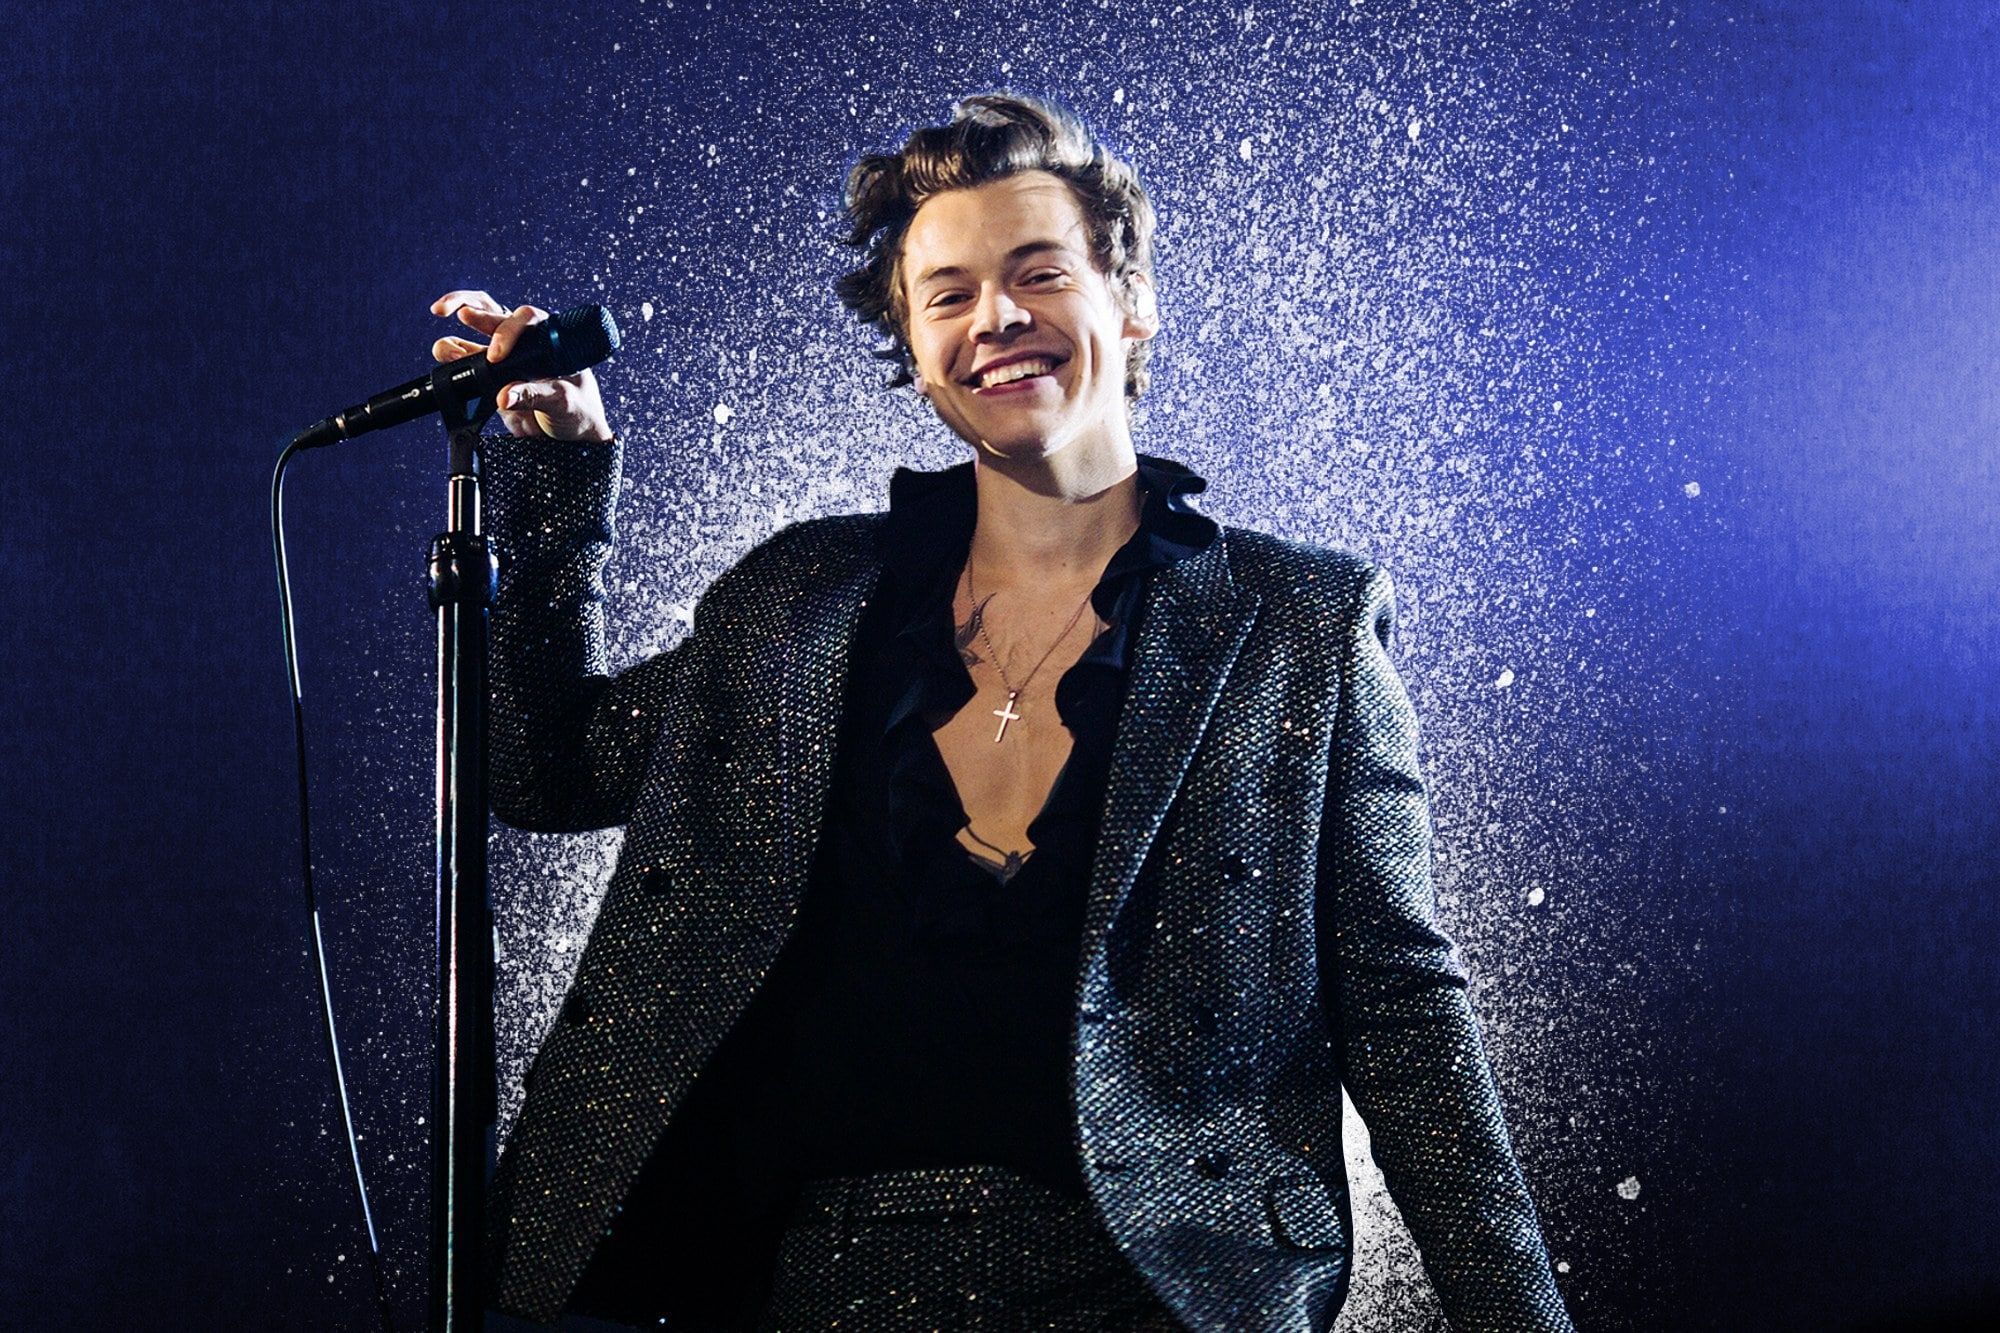 Harry Styles. Harry styles concert, Harry styles shirtless, Harry